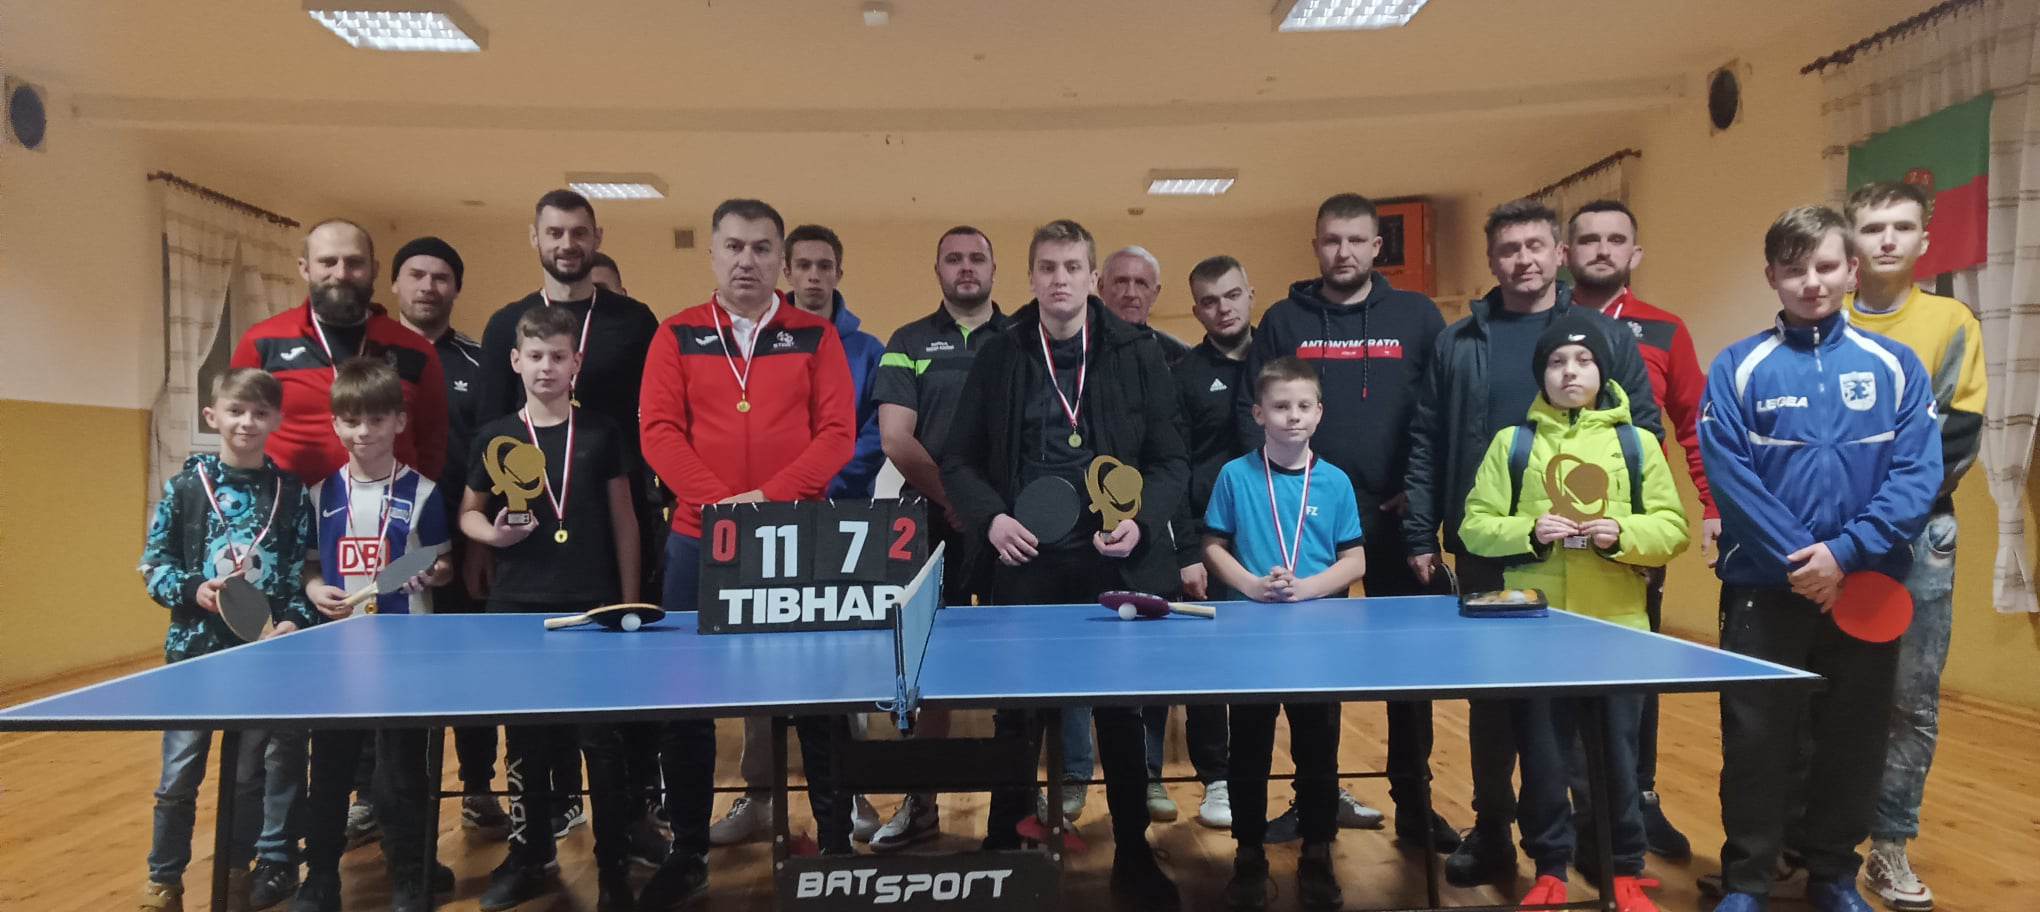 Tenisiści stołowi kolejny raz rywalizowali w Nabyszycach